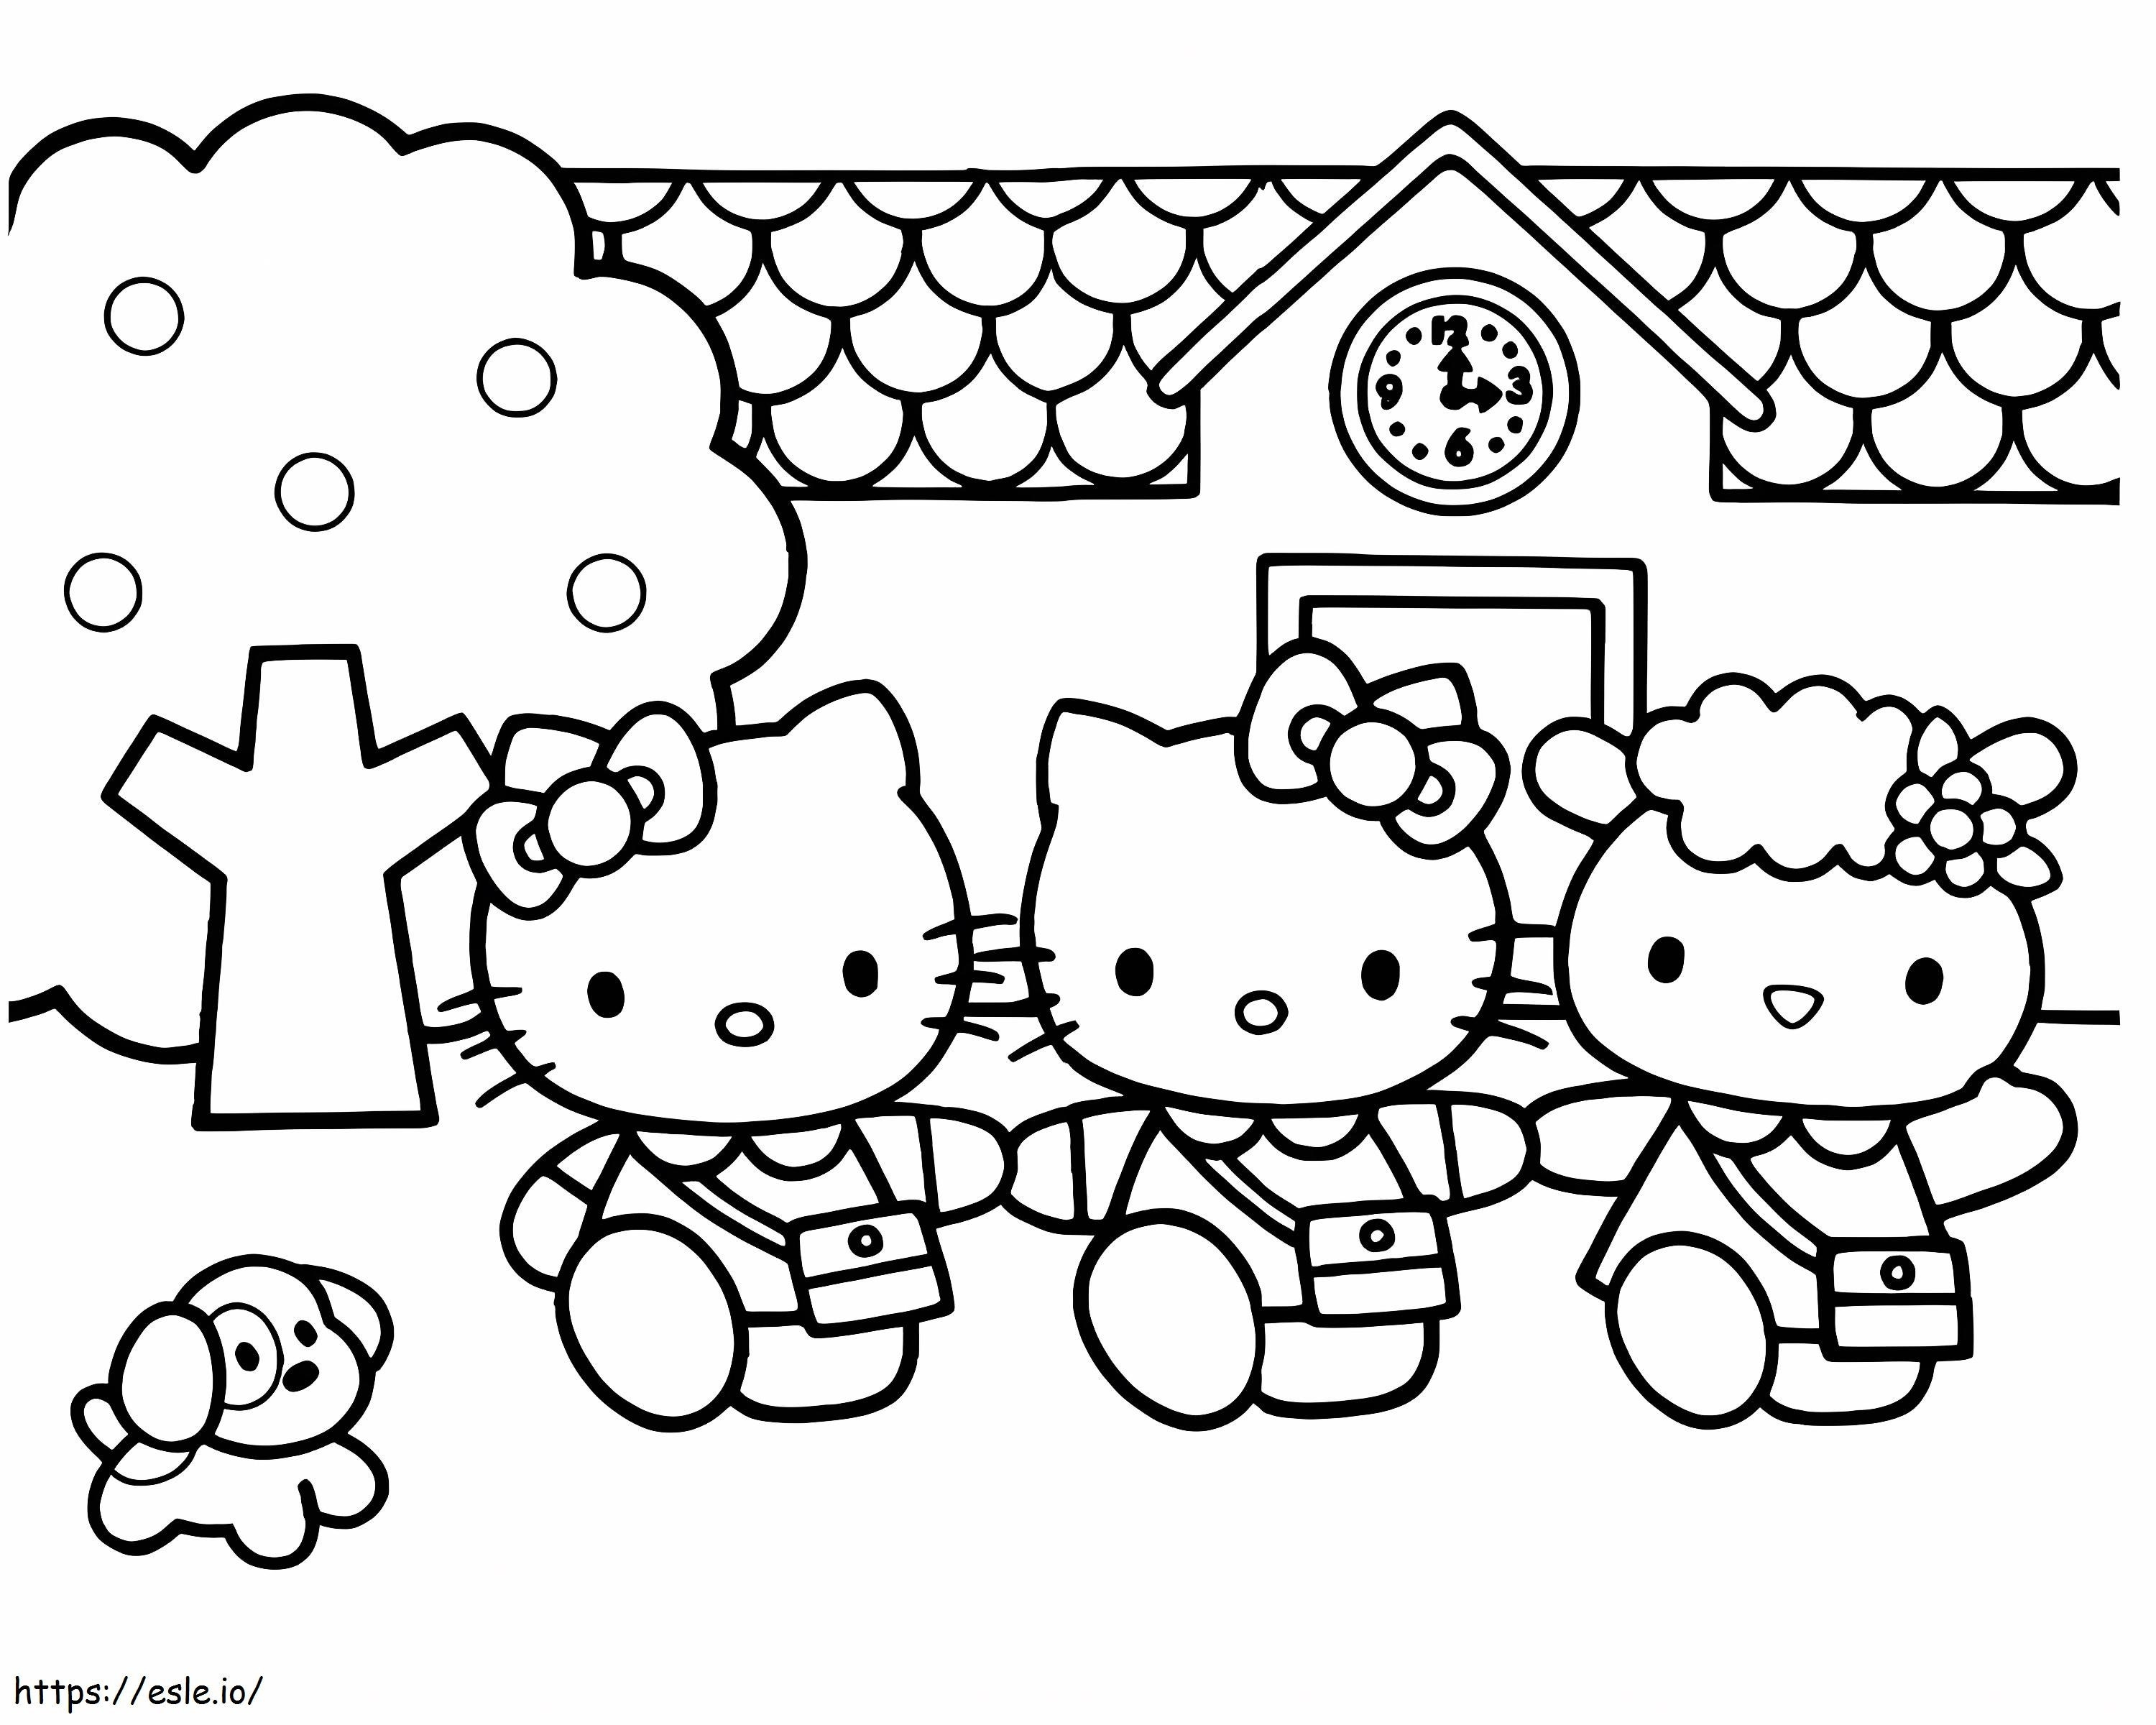 Coloriage Hello Kitty et ses amis vont à l'école à imprimer dessin